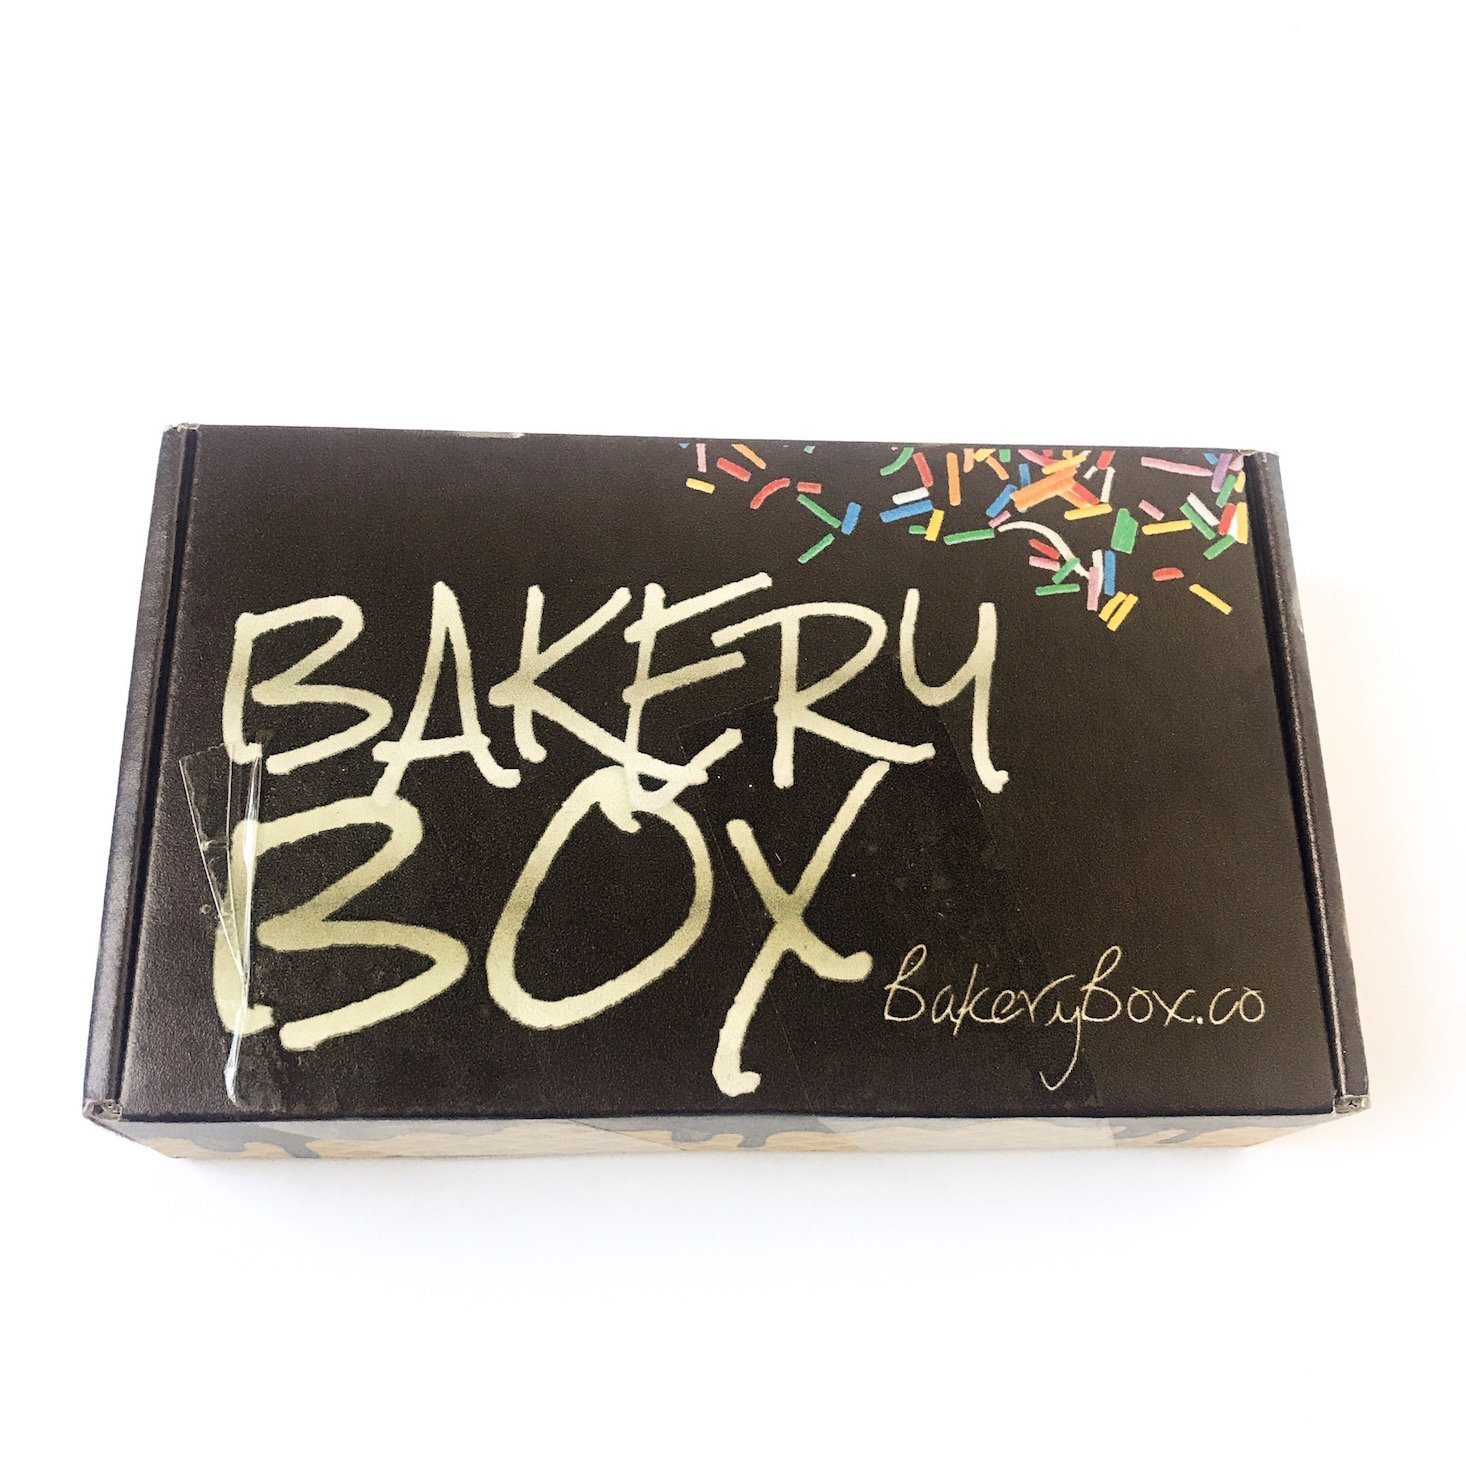 The Bakery Box by Shea Shea Bakery Review – November 2018